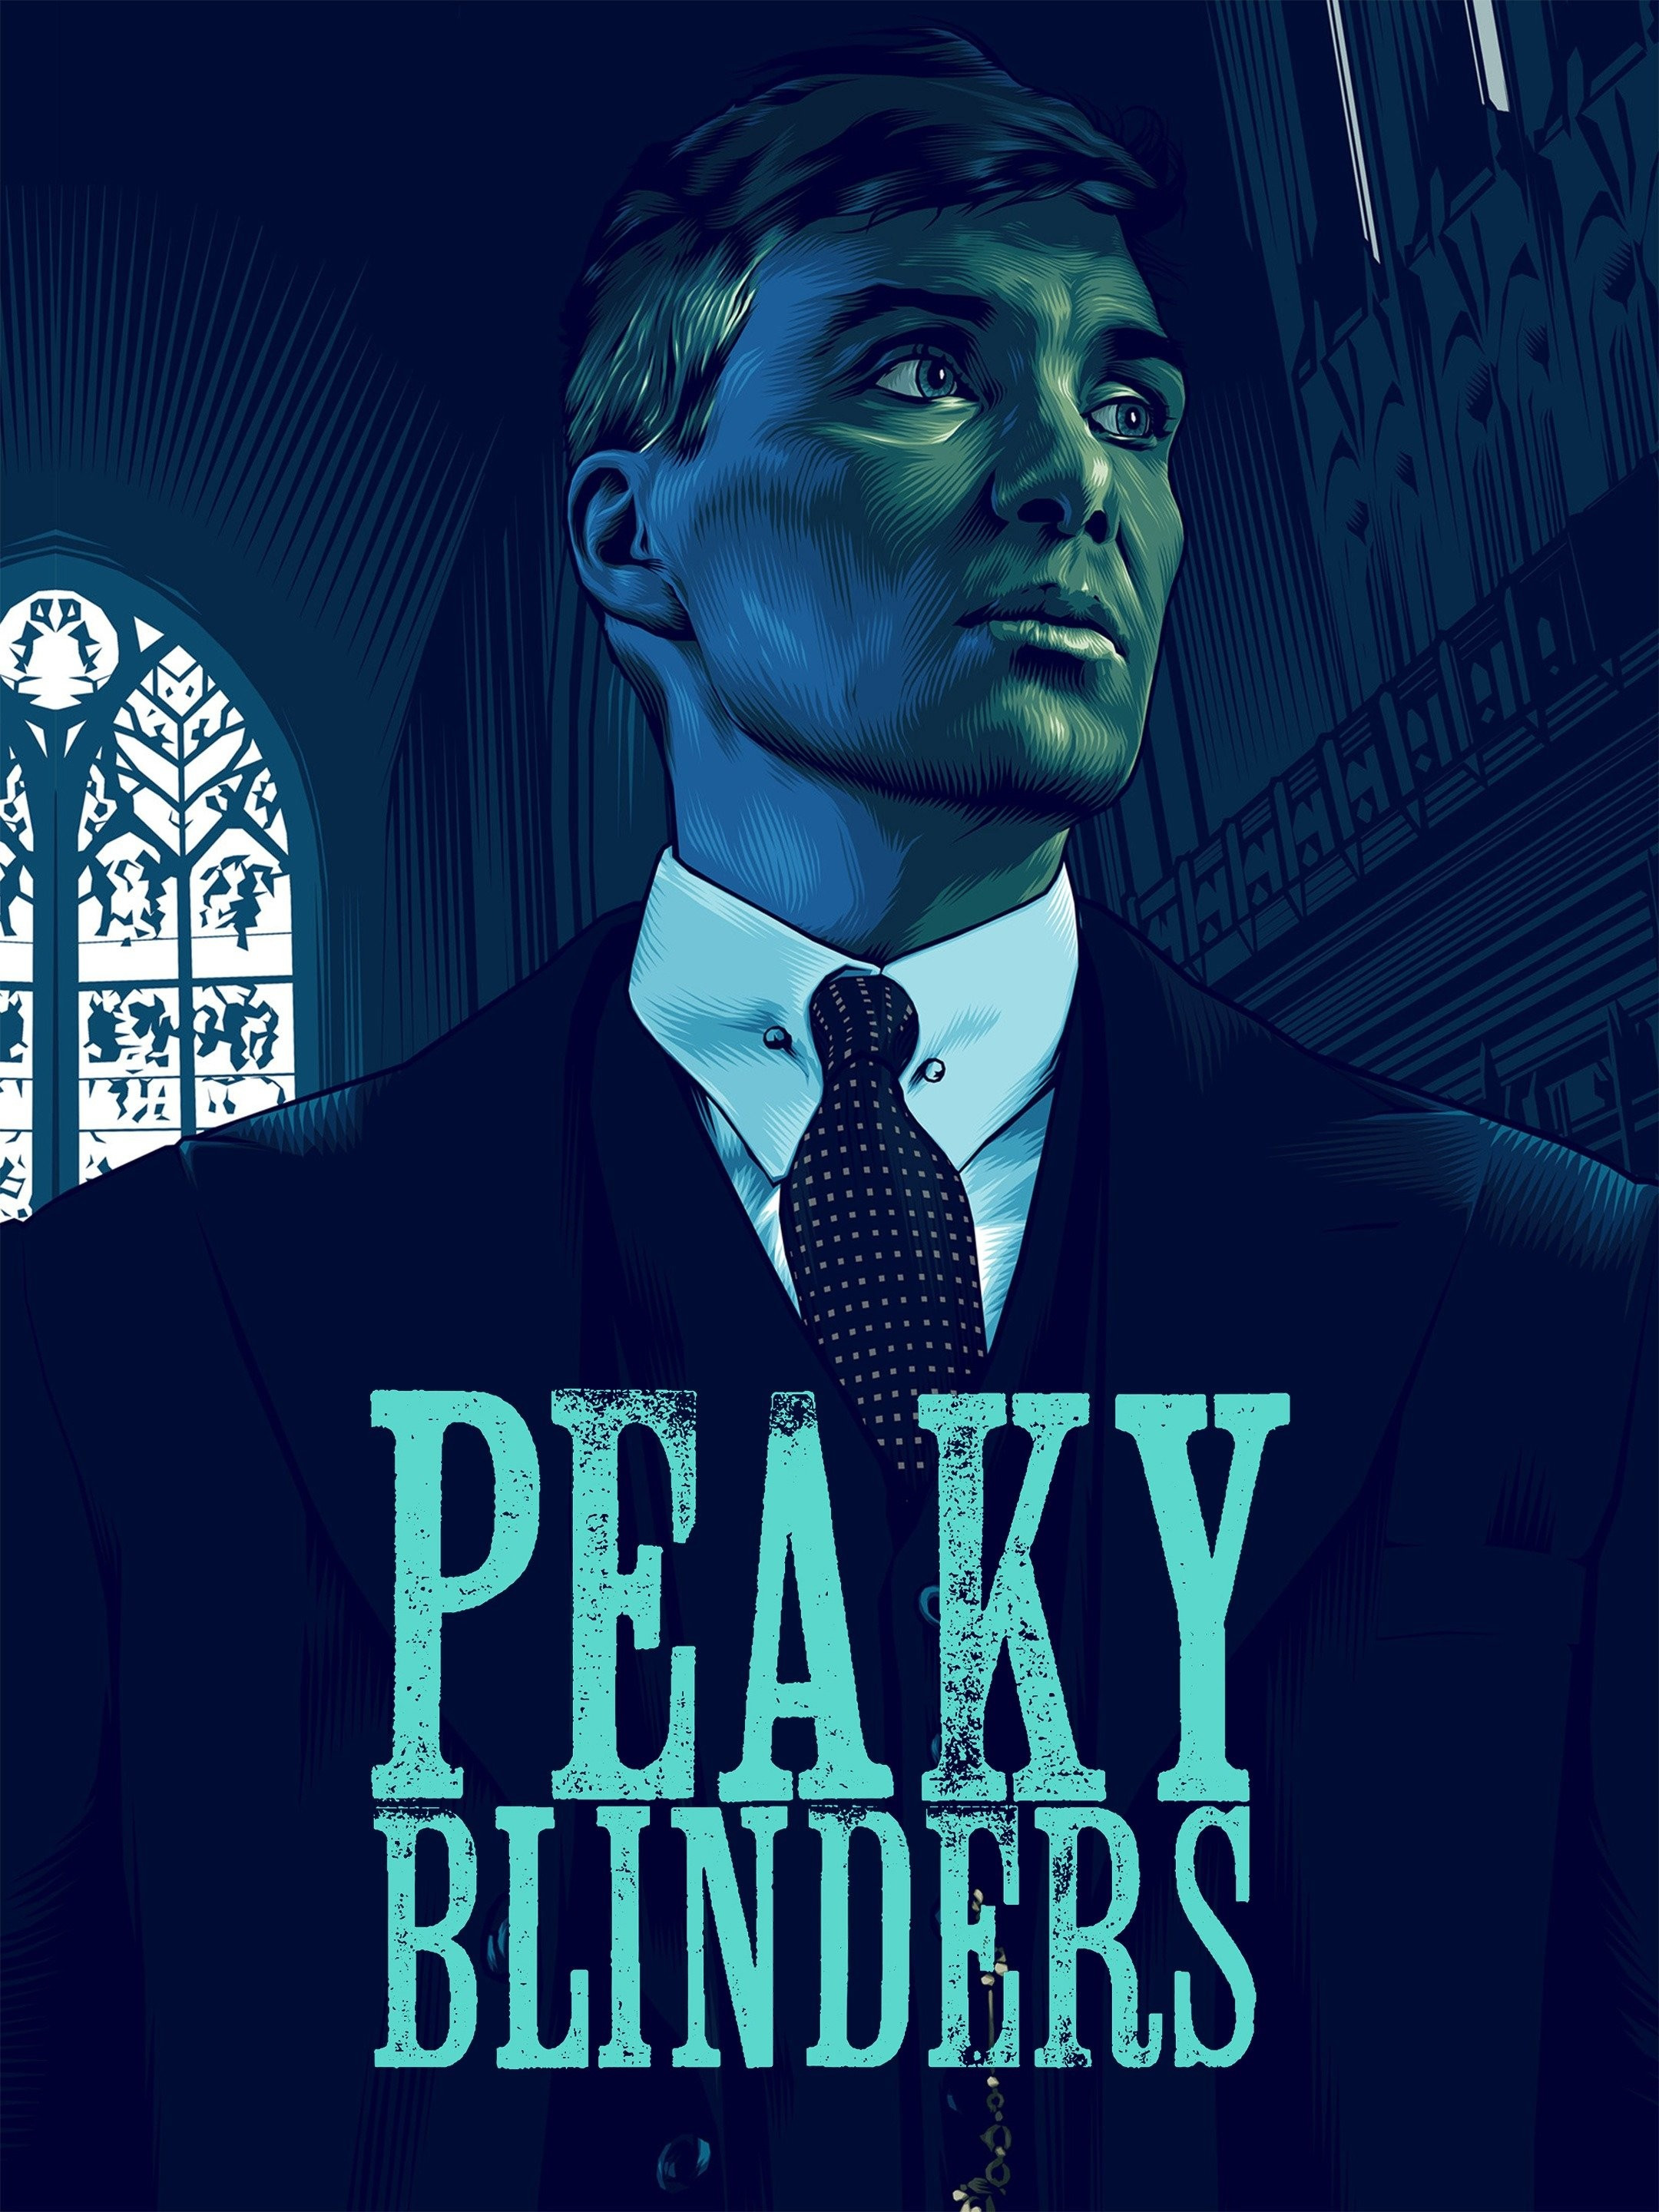 Peaky Blinders Season 6